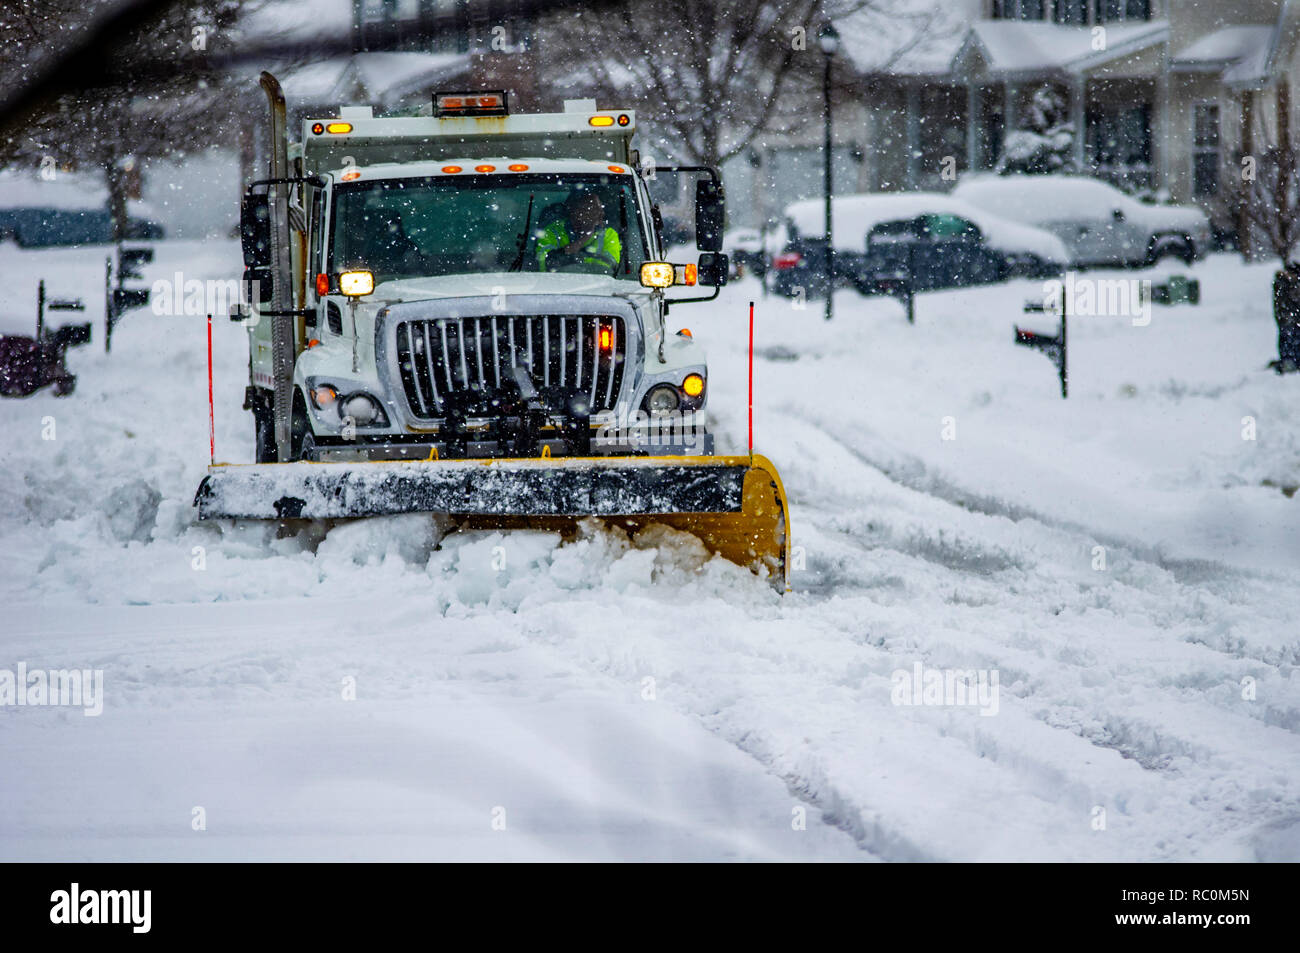 Camion blanc avec prudence orange jaune lame chasse-neige durs à travers des rues de la neige fraîchement tombée de compensation en hiver Banque D'Images